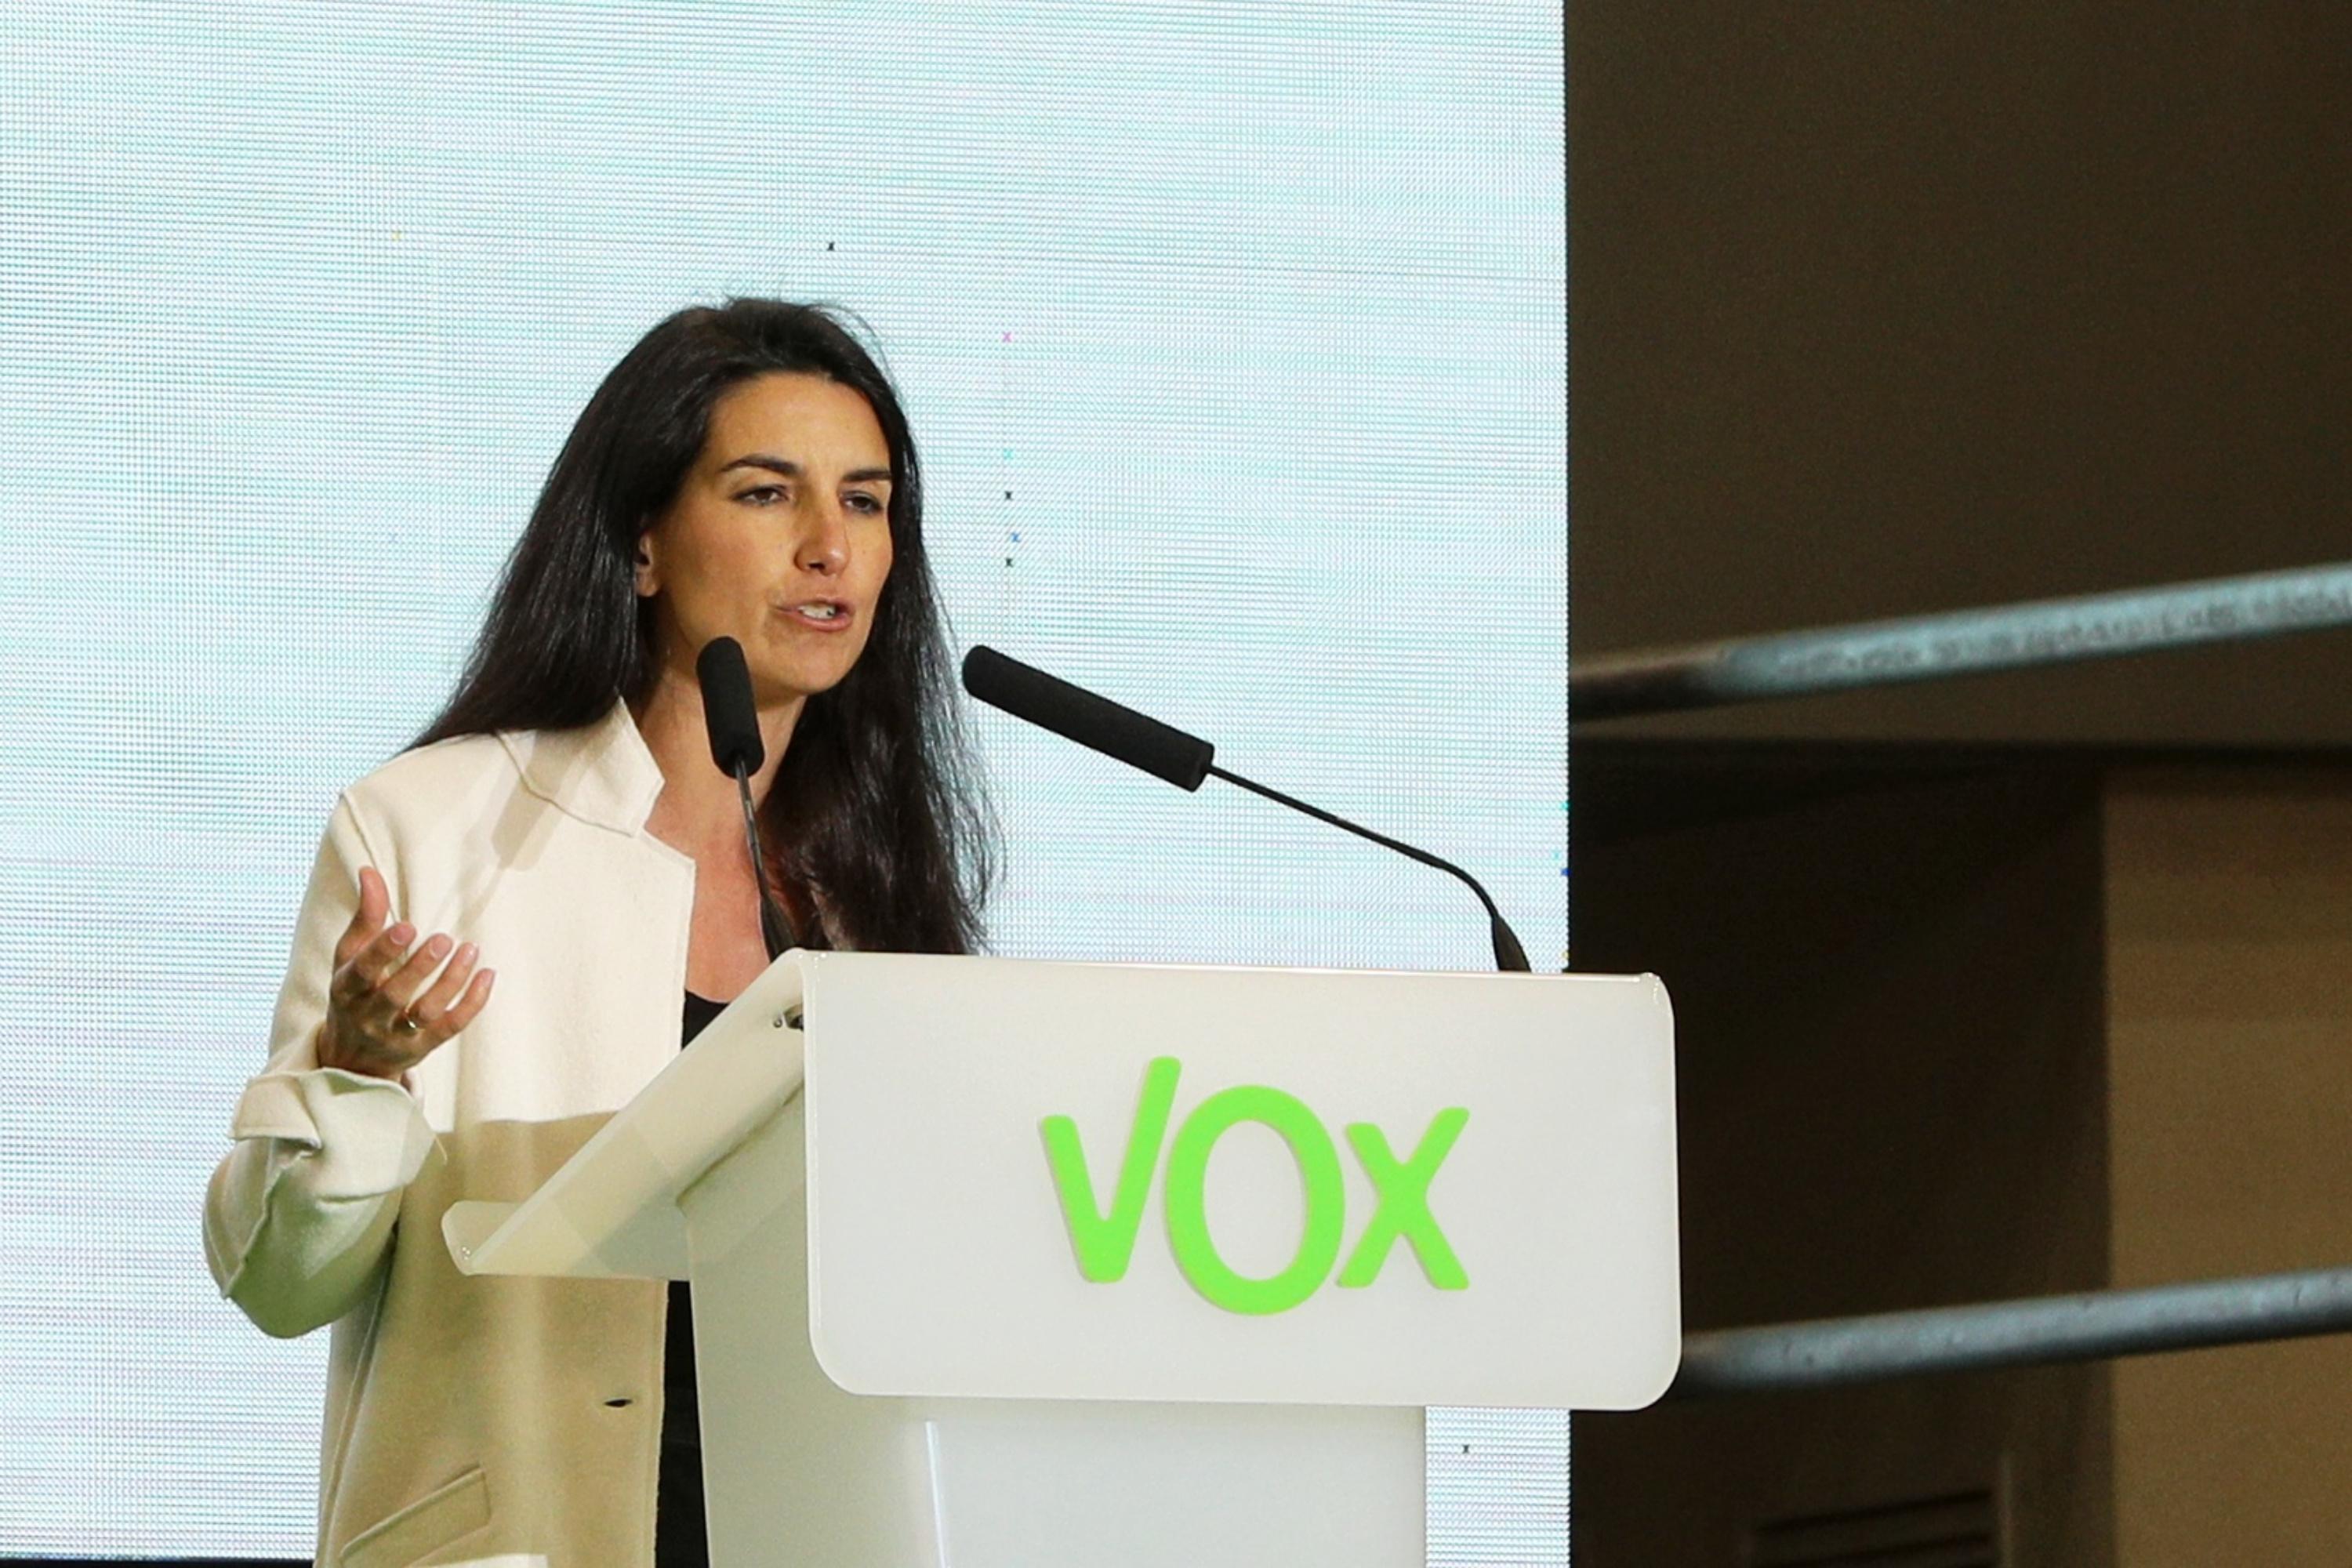 La presidenta de Vox en la Comunidad de Madrid Rocío Monasterio interviene en un acto del partido en Madrid